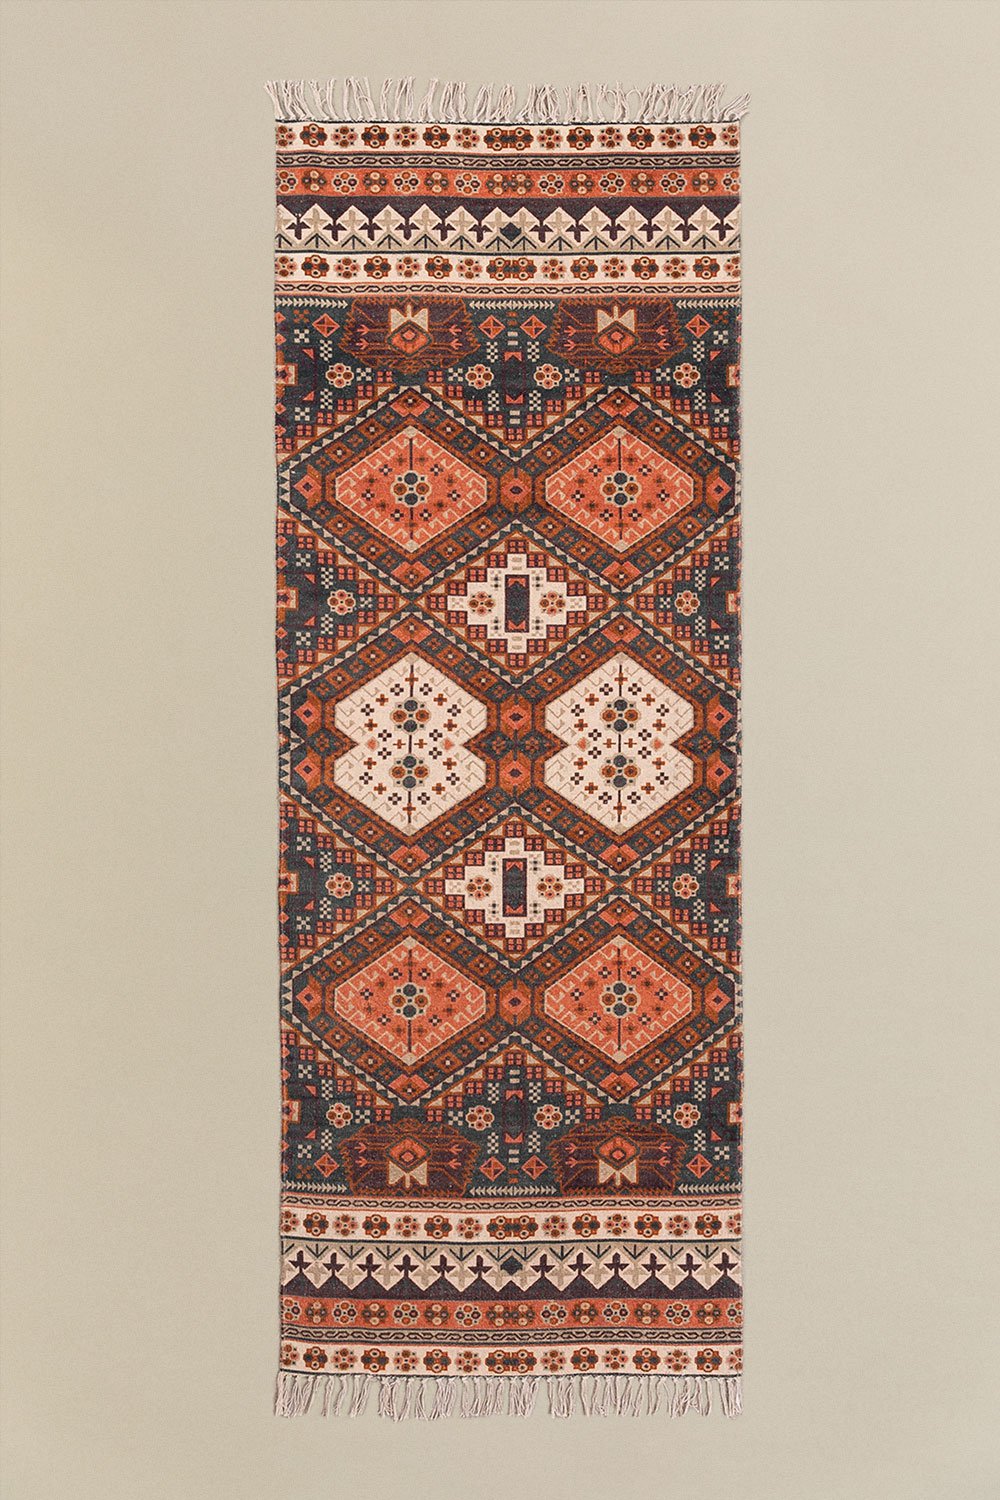 Katoenen vloerkleed (200x74 cm) Alaina, galerij beeld 1